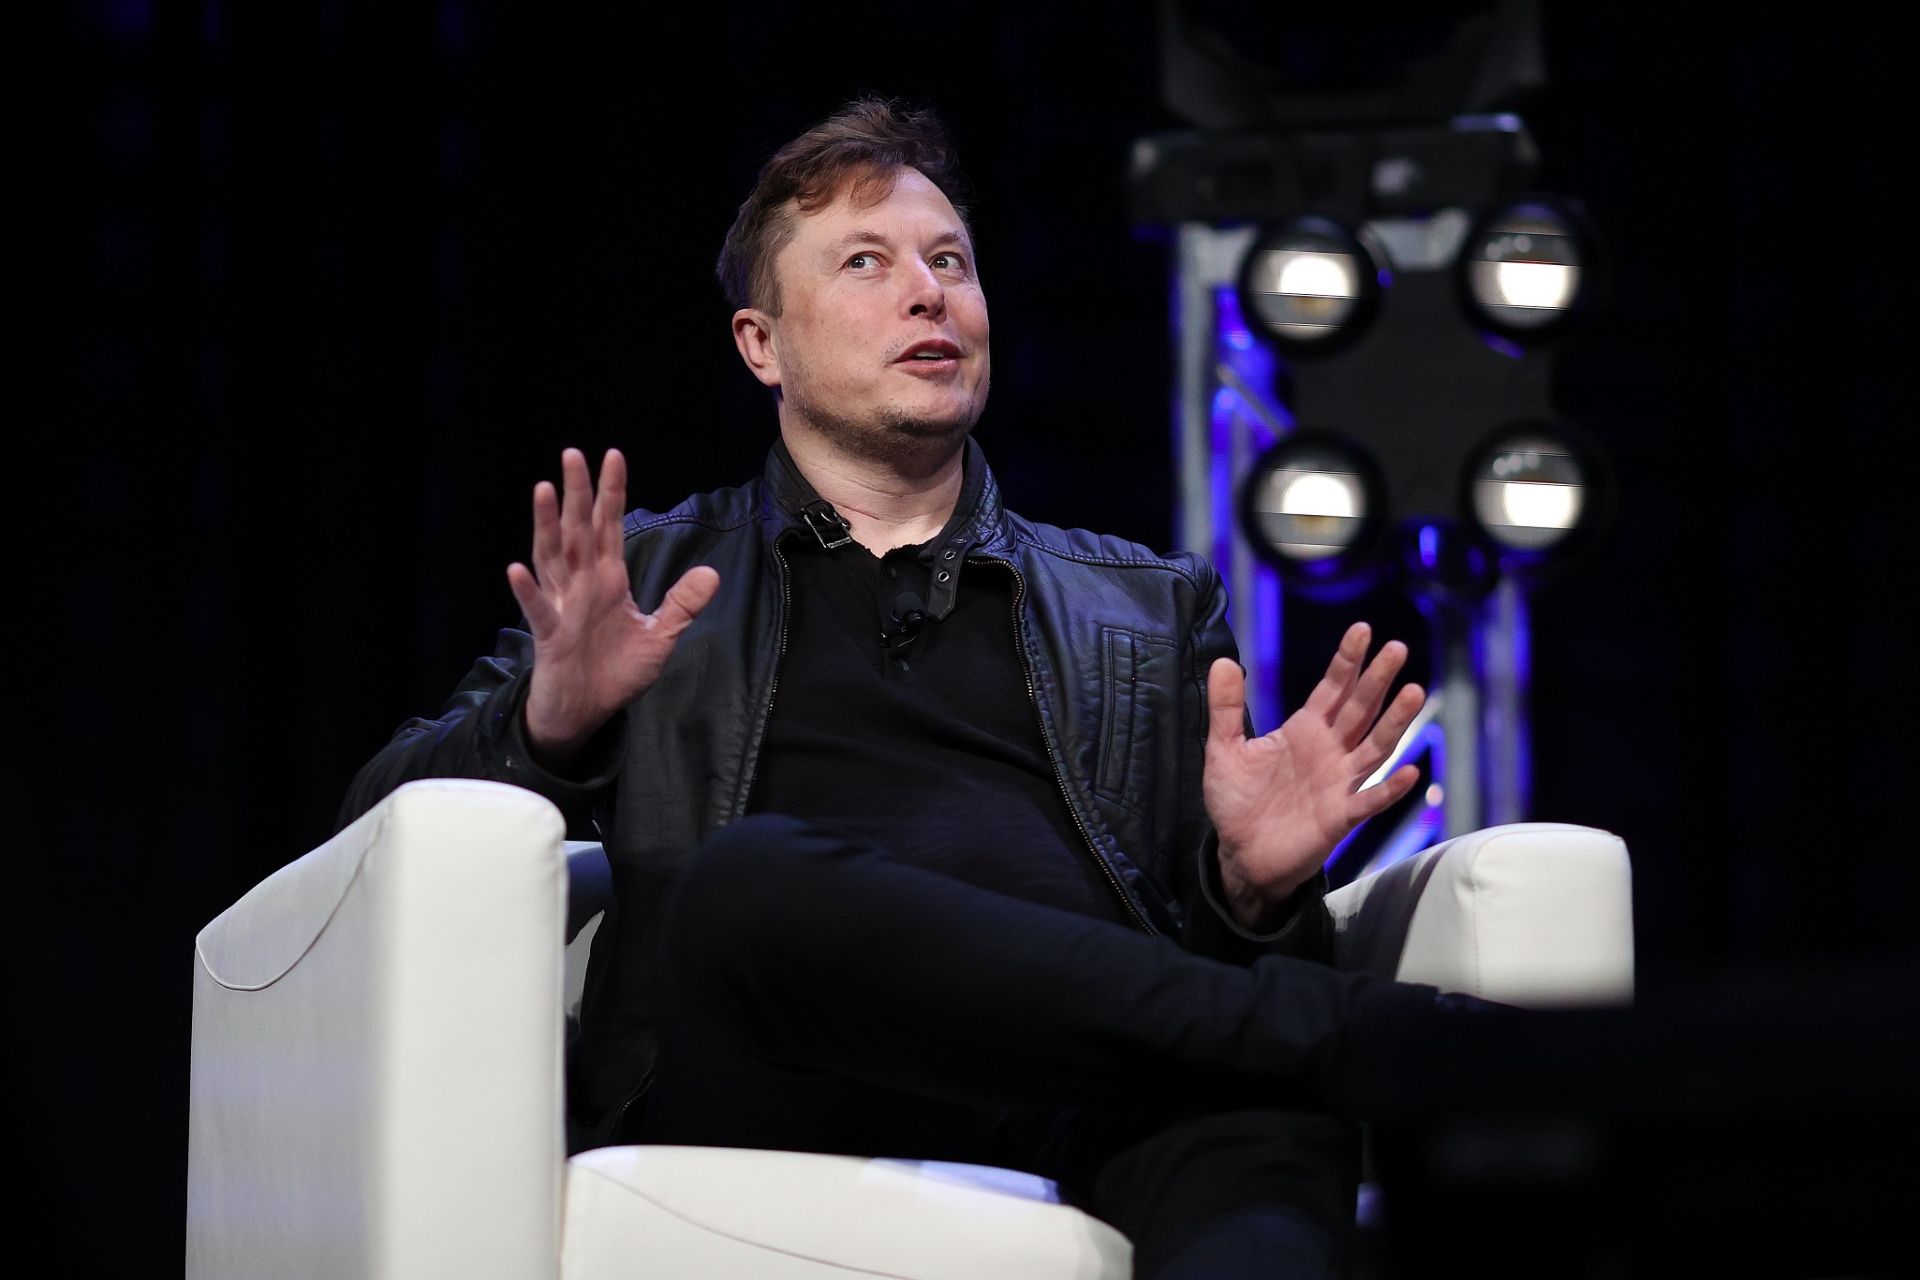 Elon Musk: Tesla will accept dodgecoin payments?